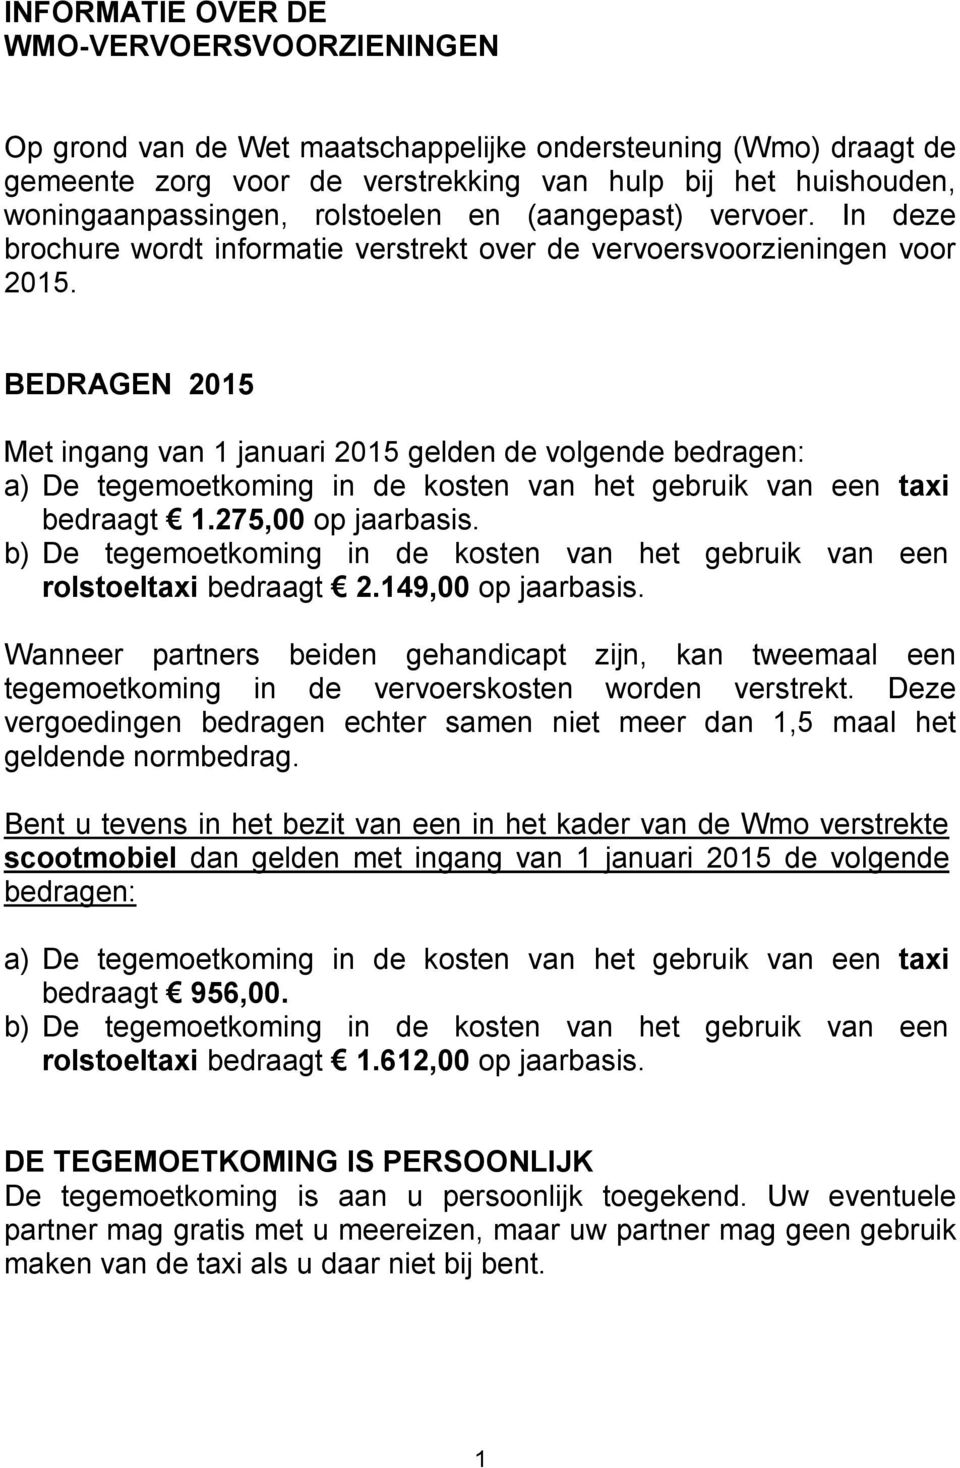 BEDRAGEN 2015 Met ingang van 1 januari 2015 gelden de volgende bedragen: a) De tegemoetkoming in de kosten van het gebruik van een taxi bedraagt 1.275,00 op jaarbasis.